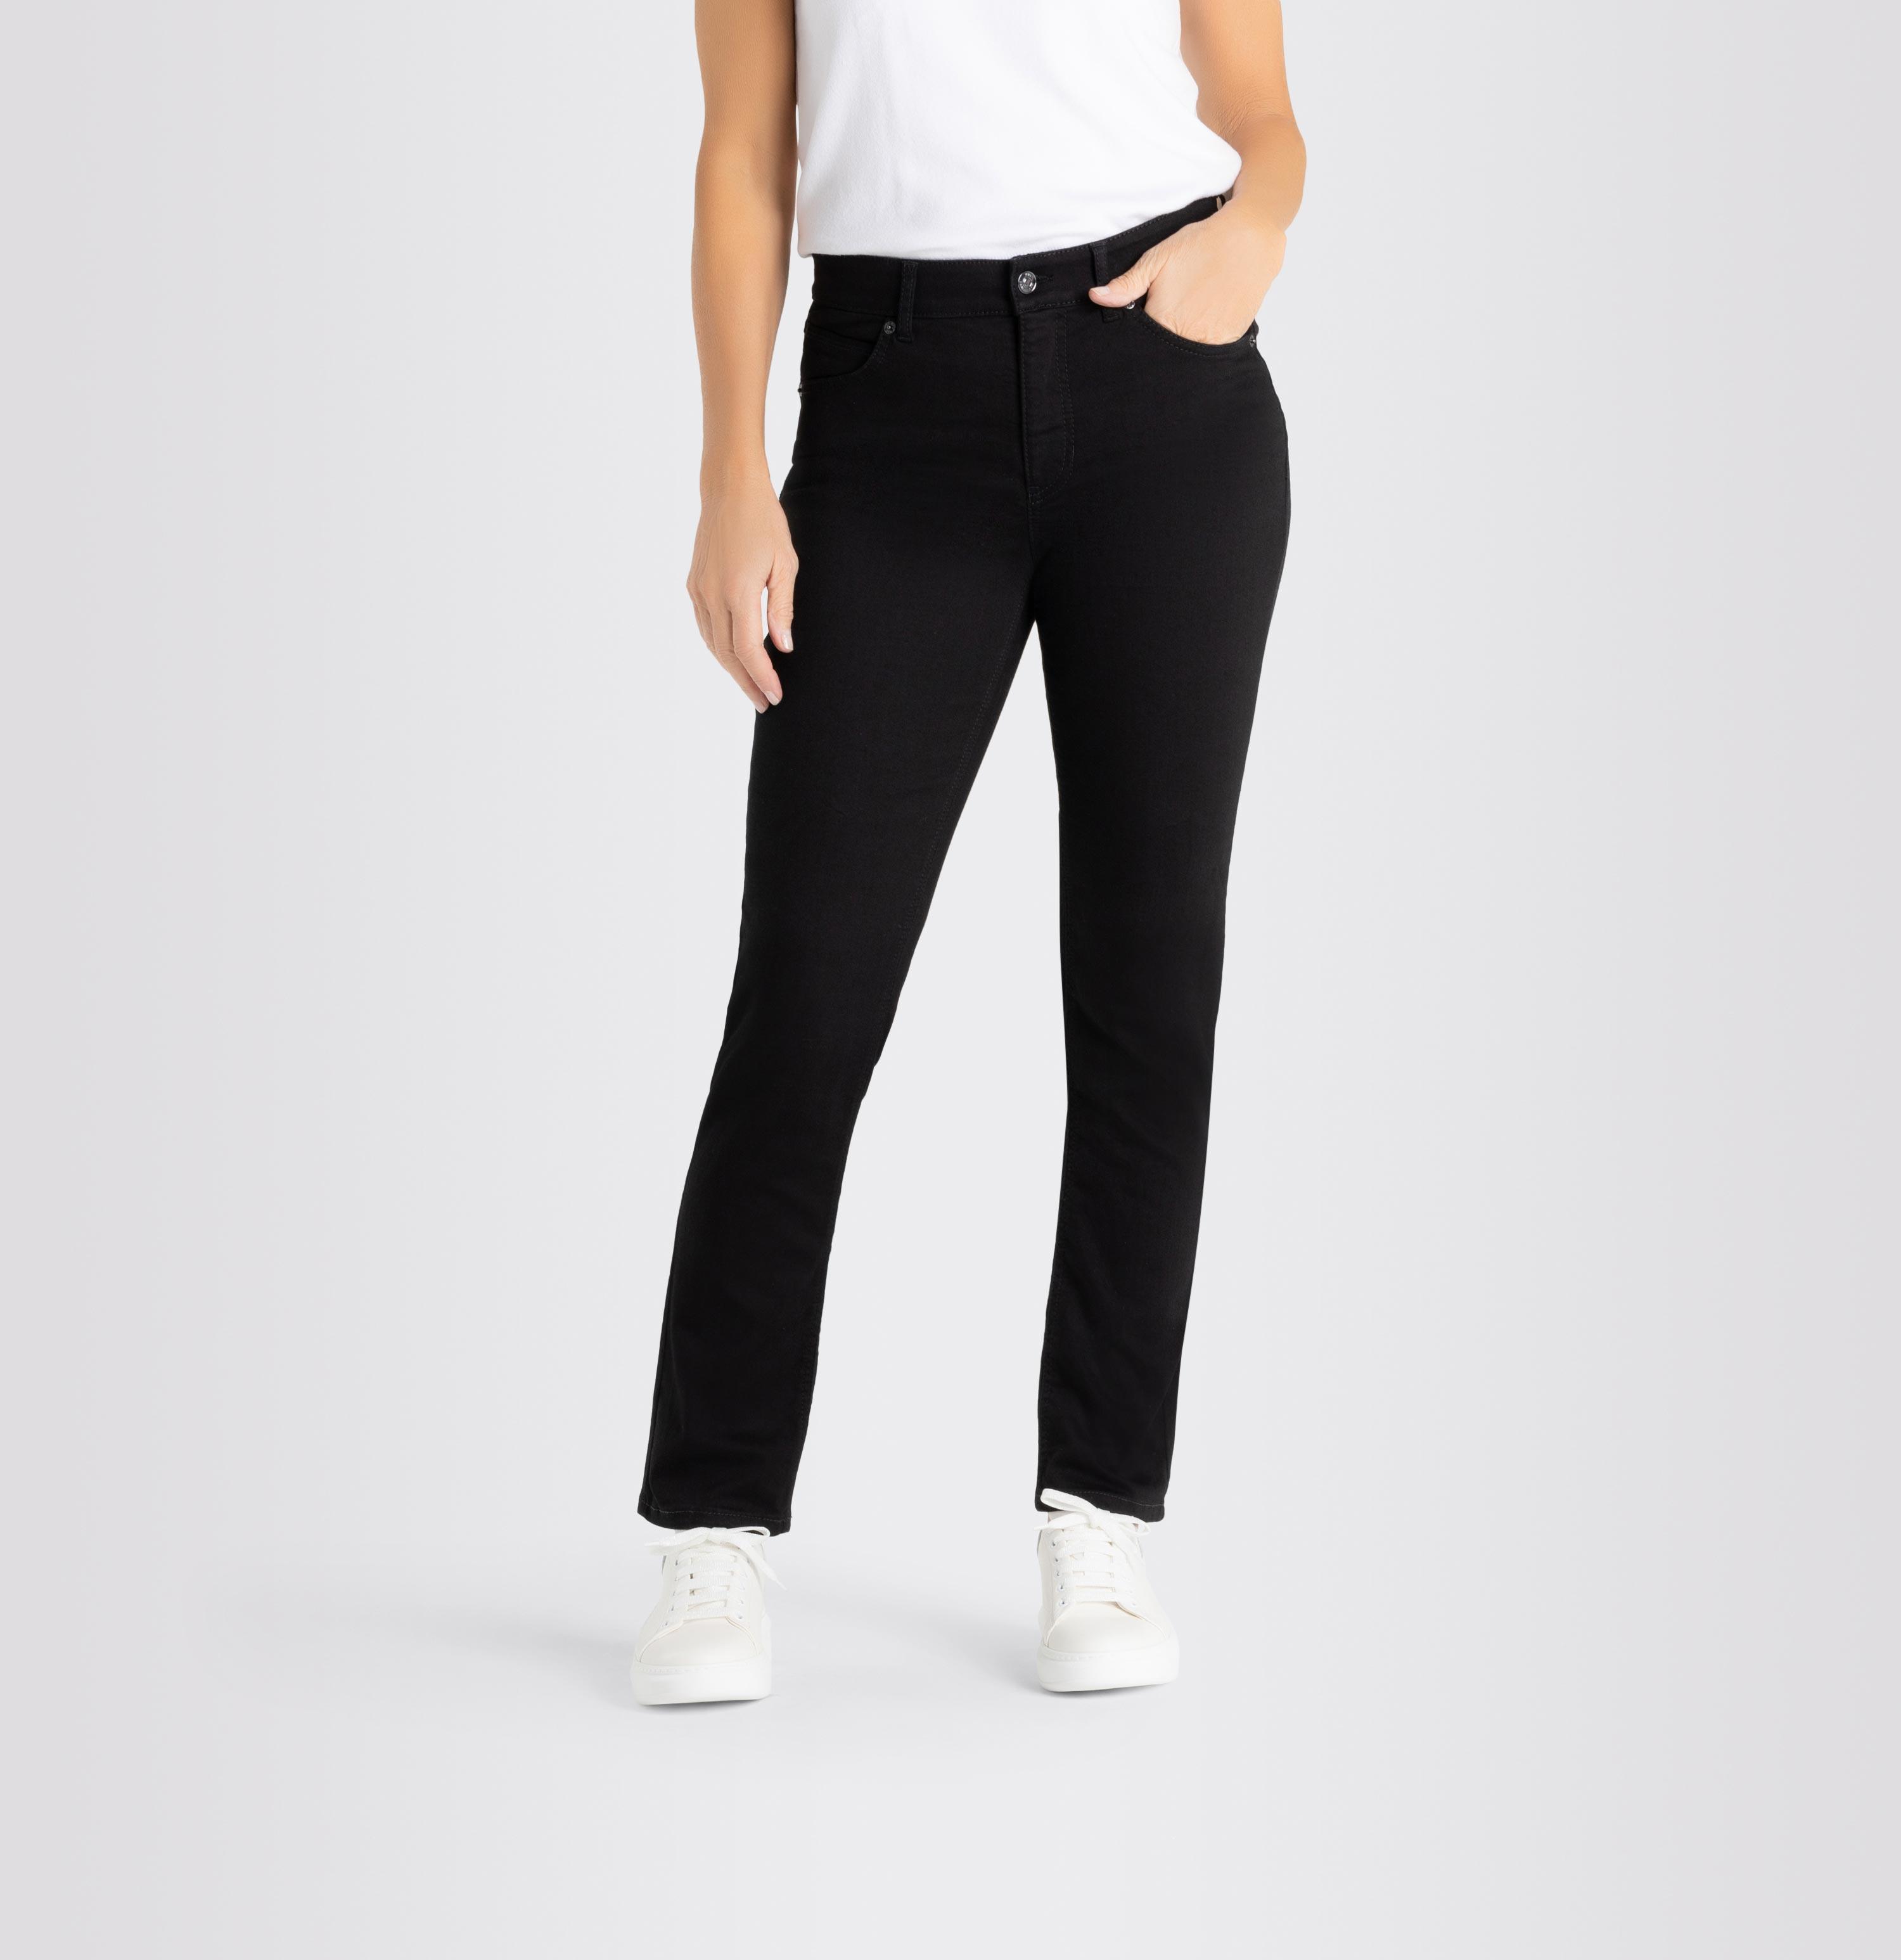 Damenhose, Melanie, Perfect Shop MAC D999 - AT Fit, schwarz Jeans 